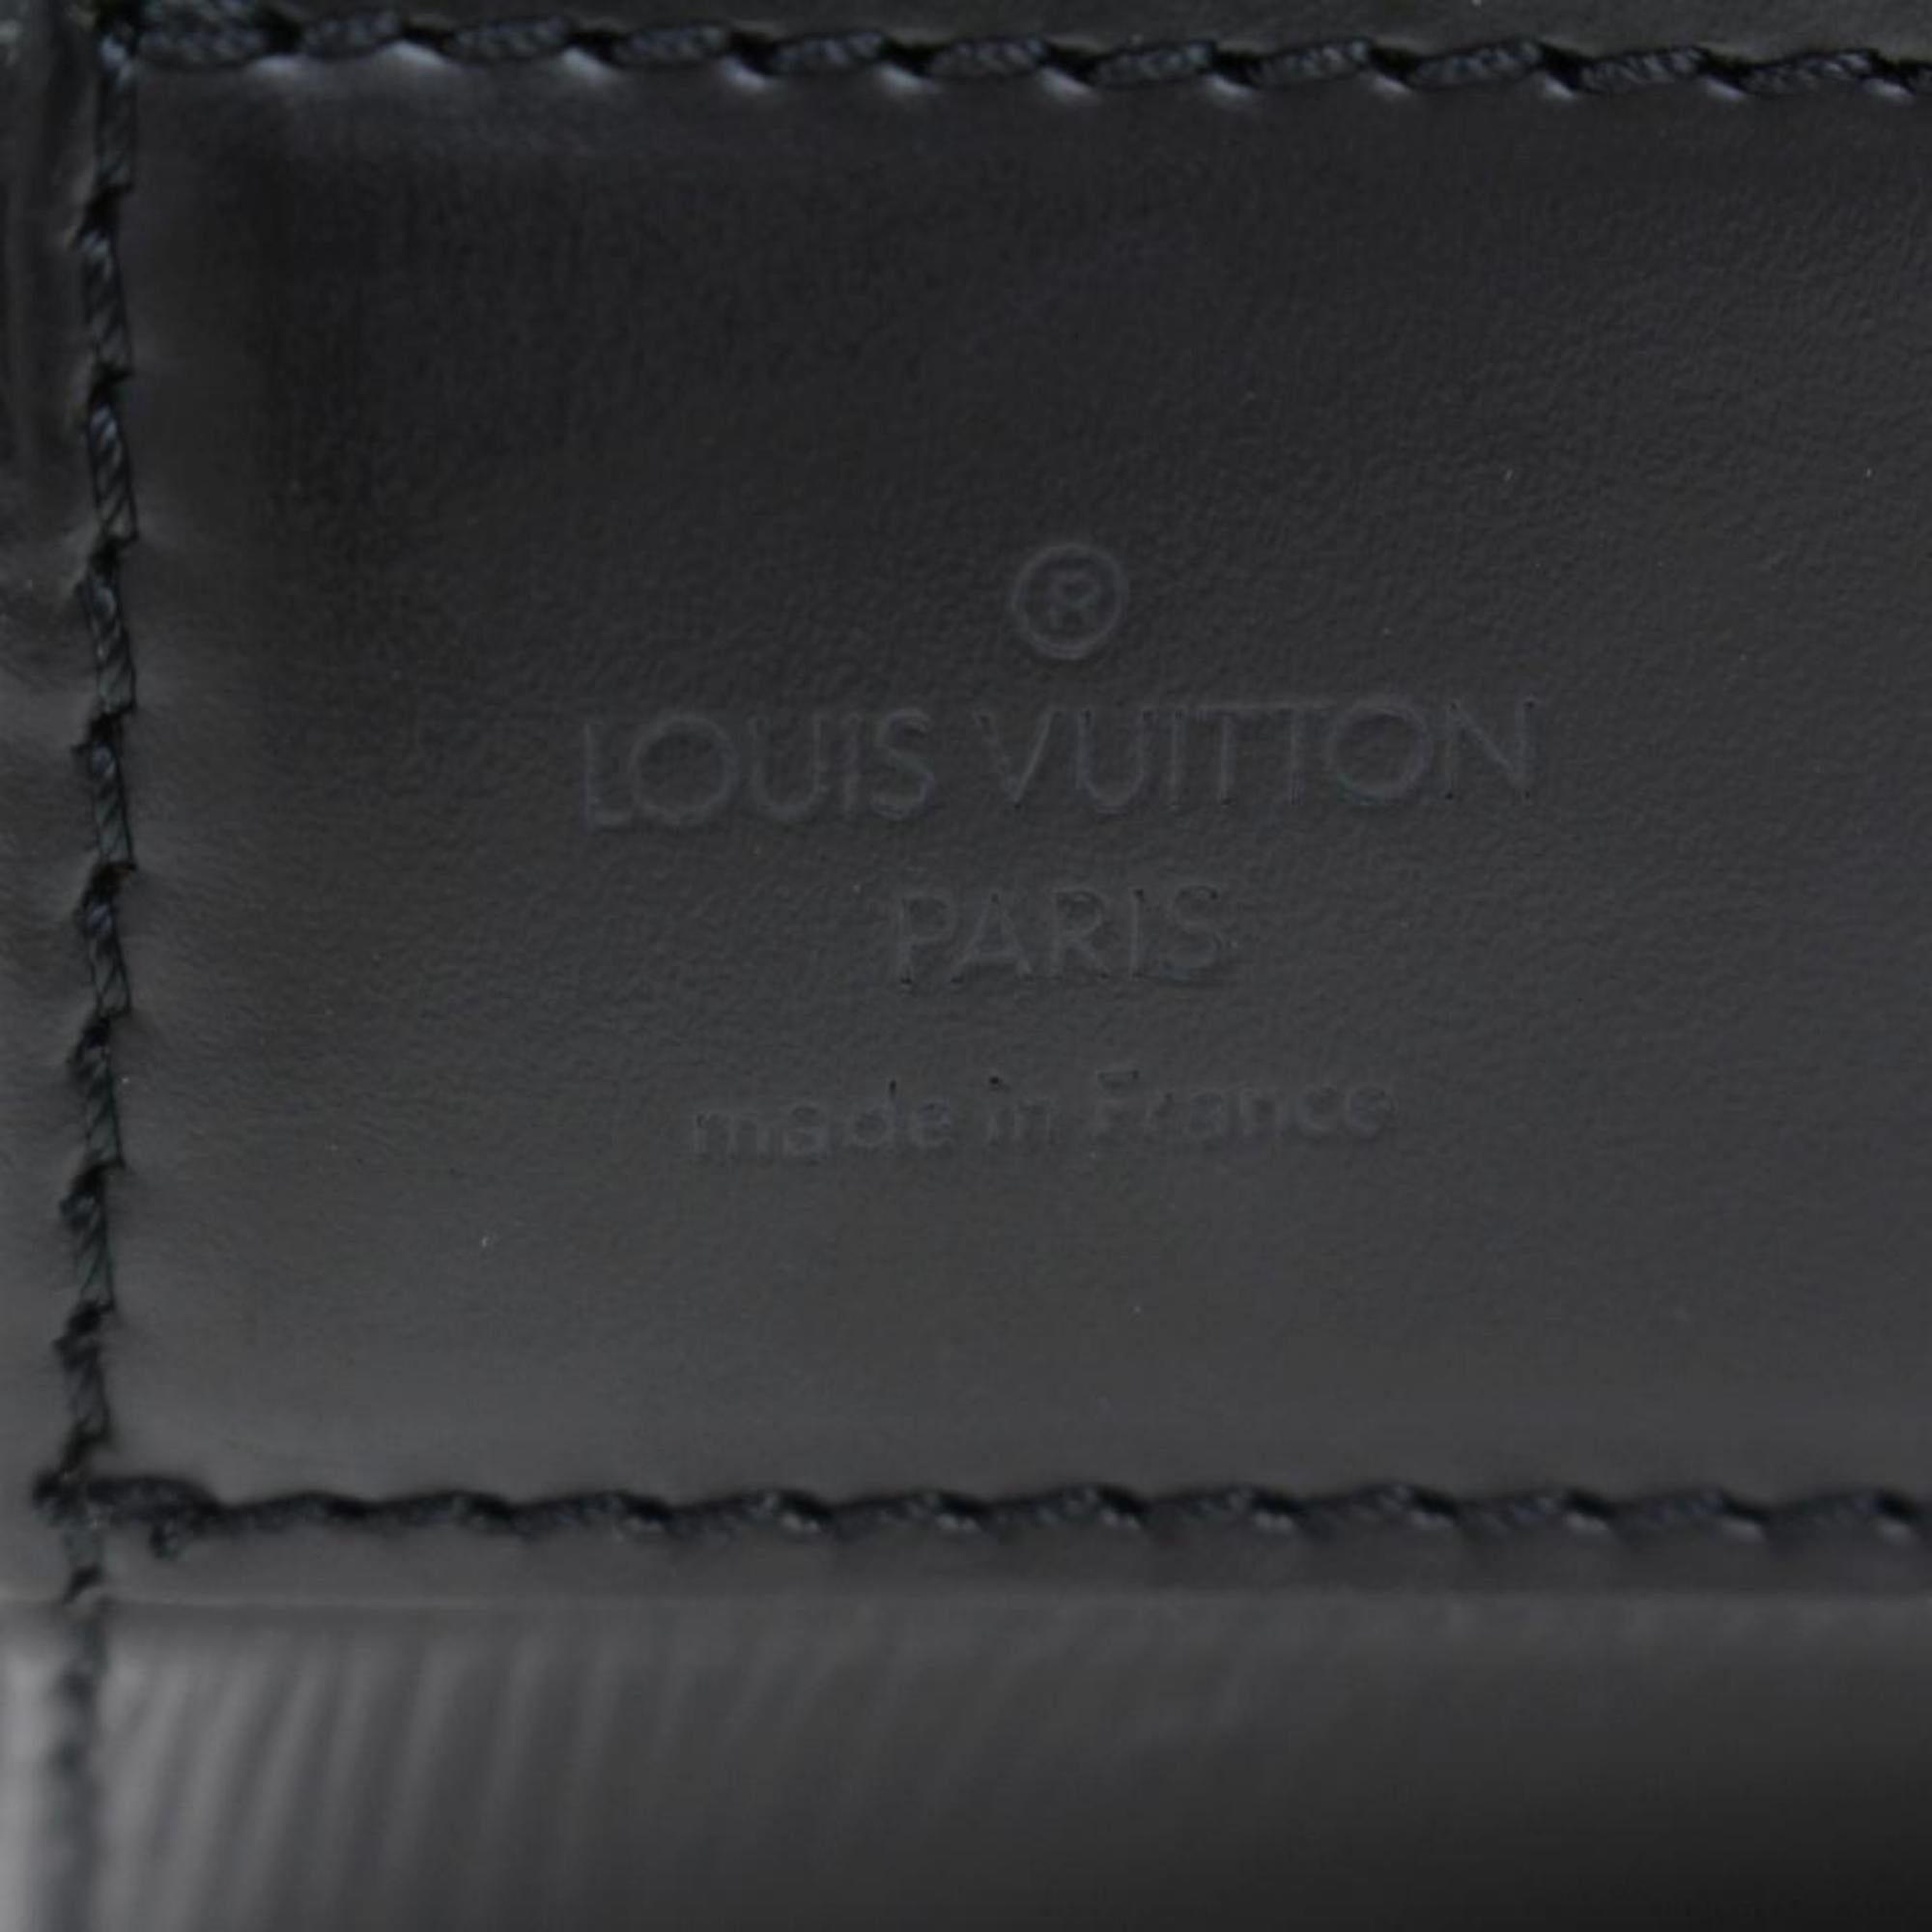 Louis Vuitton Sac Seau 866185 Black Leather Satchel For Sale 1